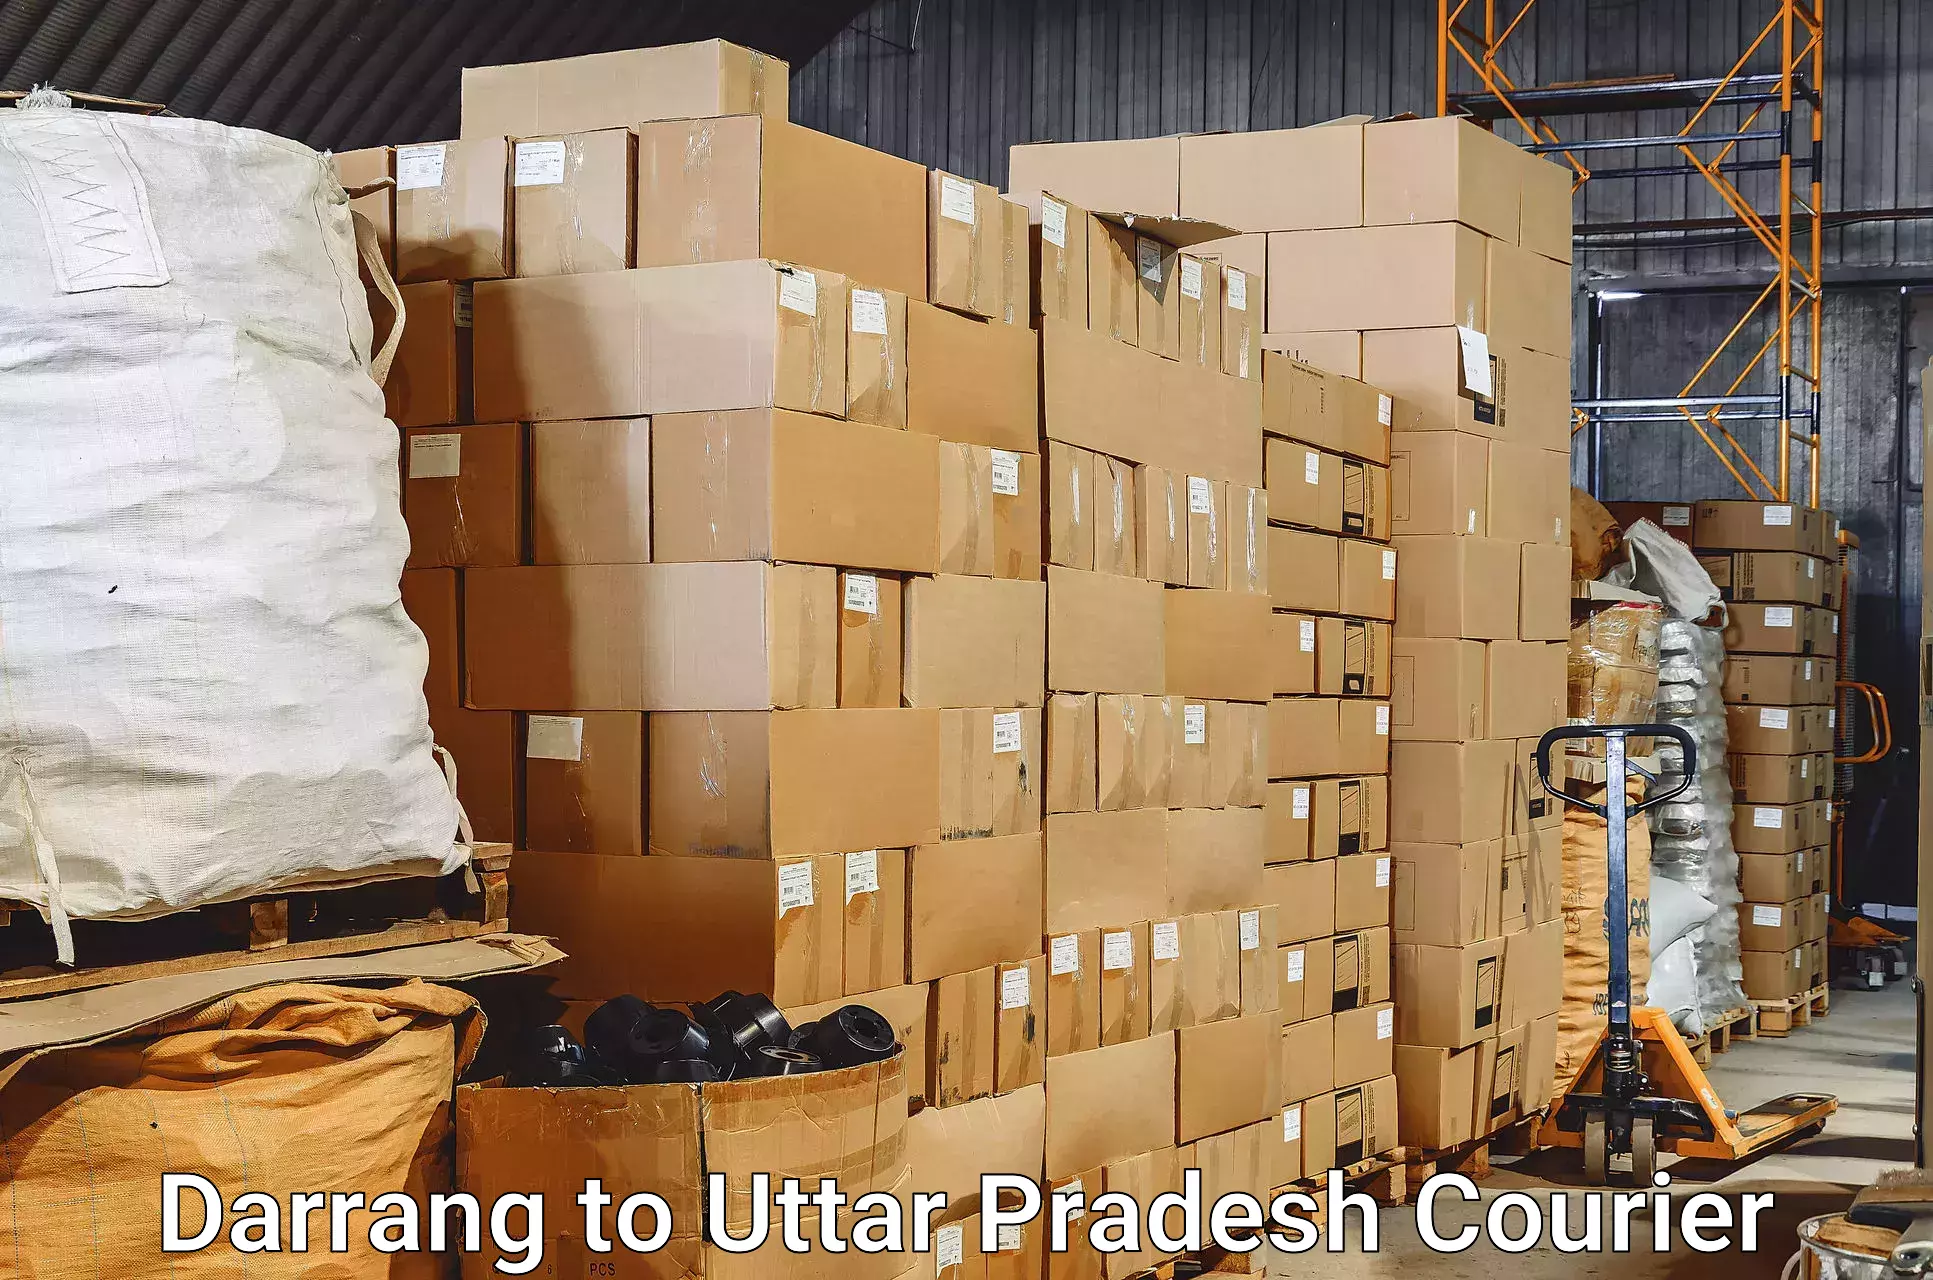 Baggage delivery estimate Darrang to Dildar Nagar